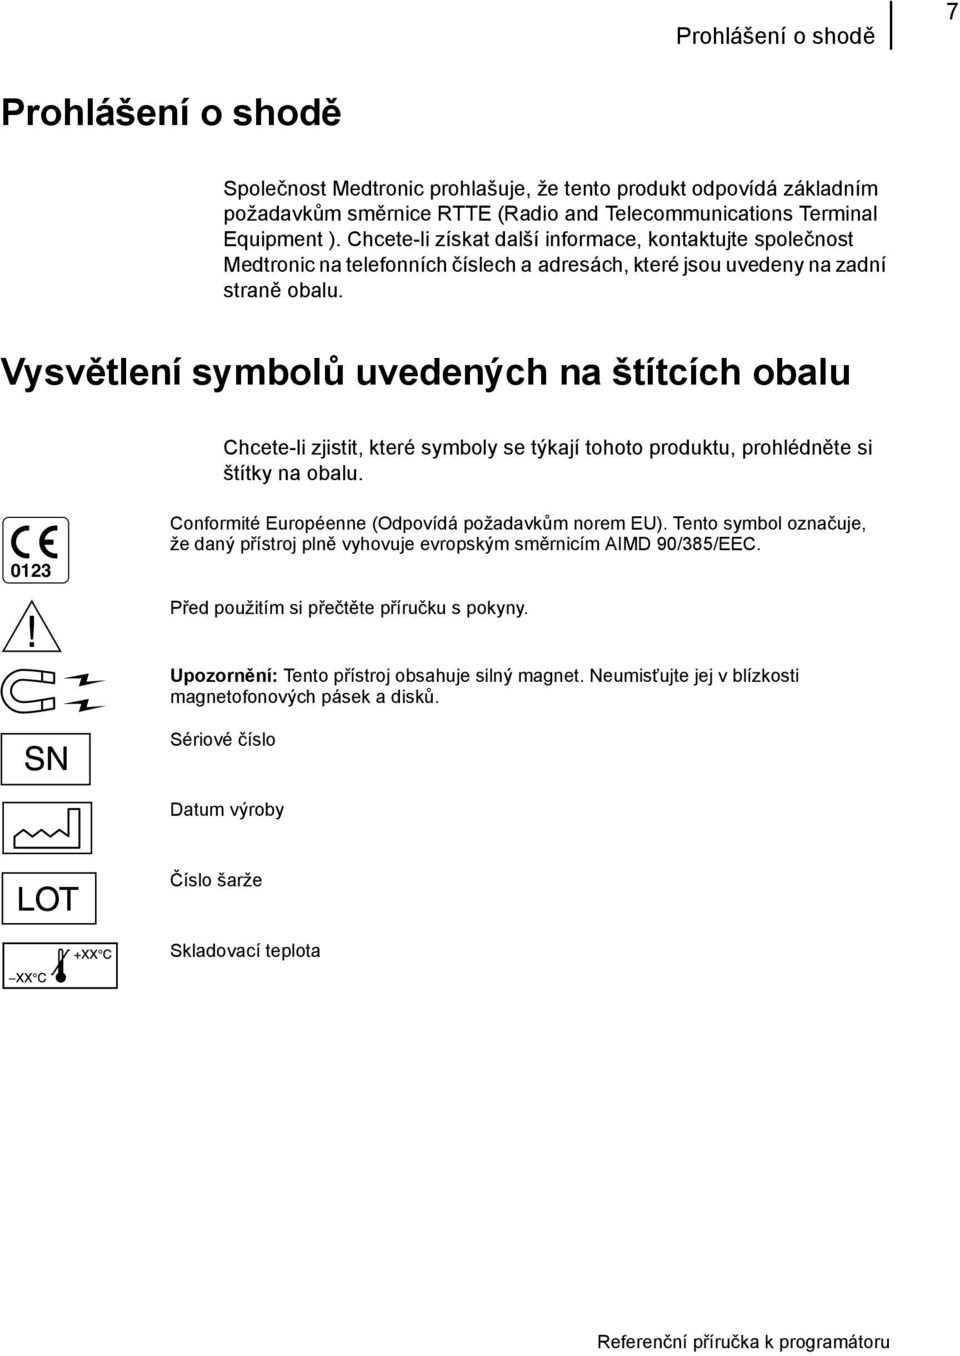 Vysvětlení symbolů uvedených na štítcích obalu Chcete-li zjistit, které symboly se týkají tohoto produktu, prohlédněte si štítky na obalu. 0123 Conformité Européenne (Odpovídá požadavkům norem EU).